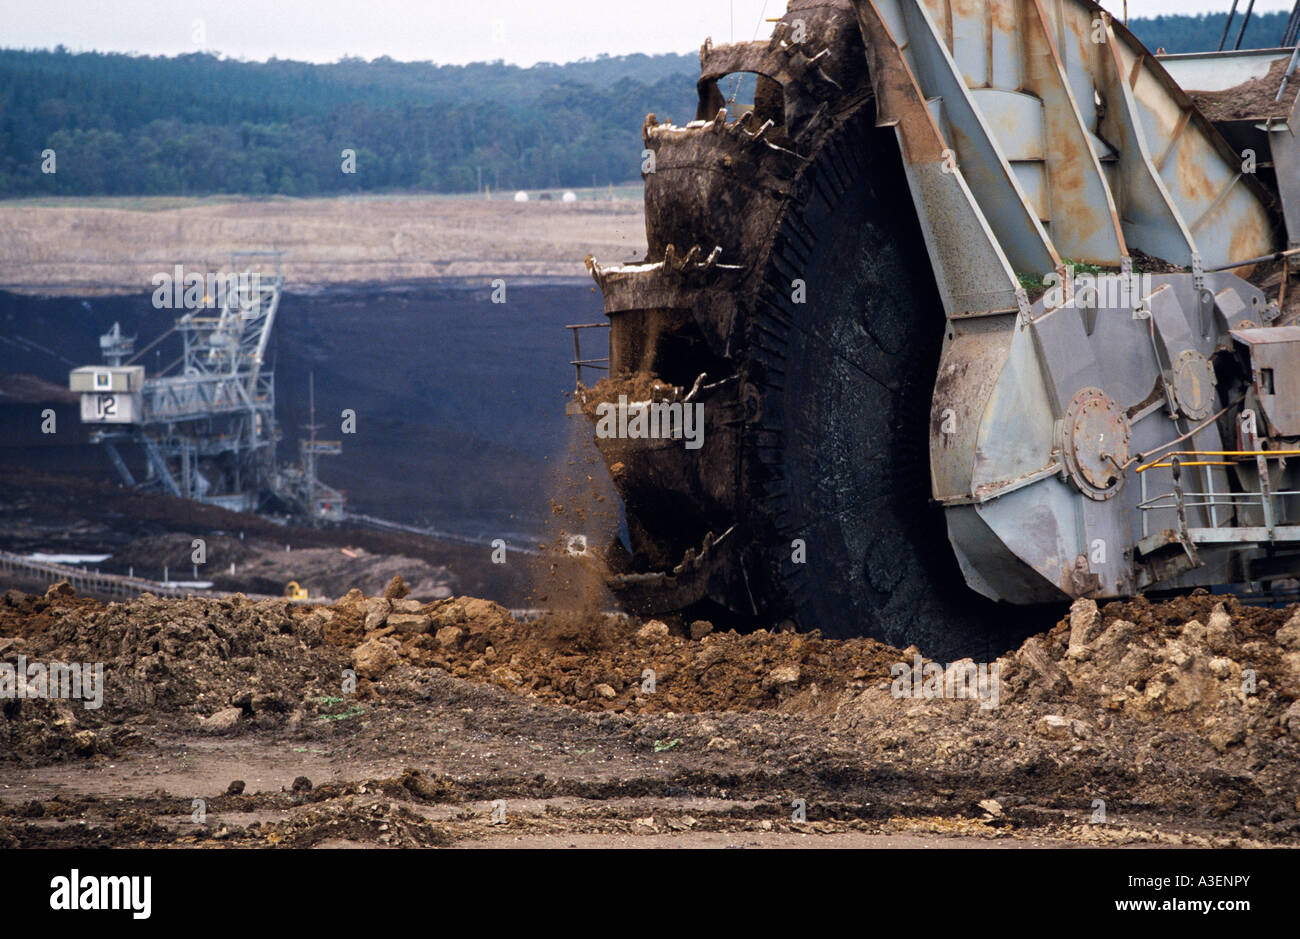 Open cut coal mining, Australia Stock Photo